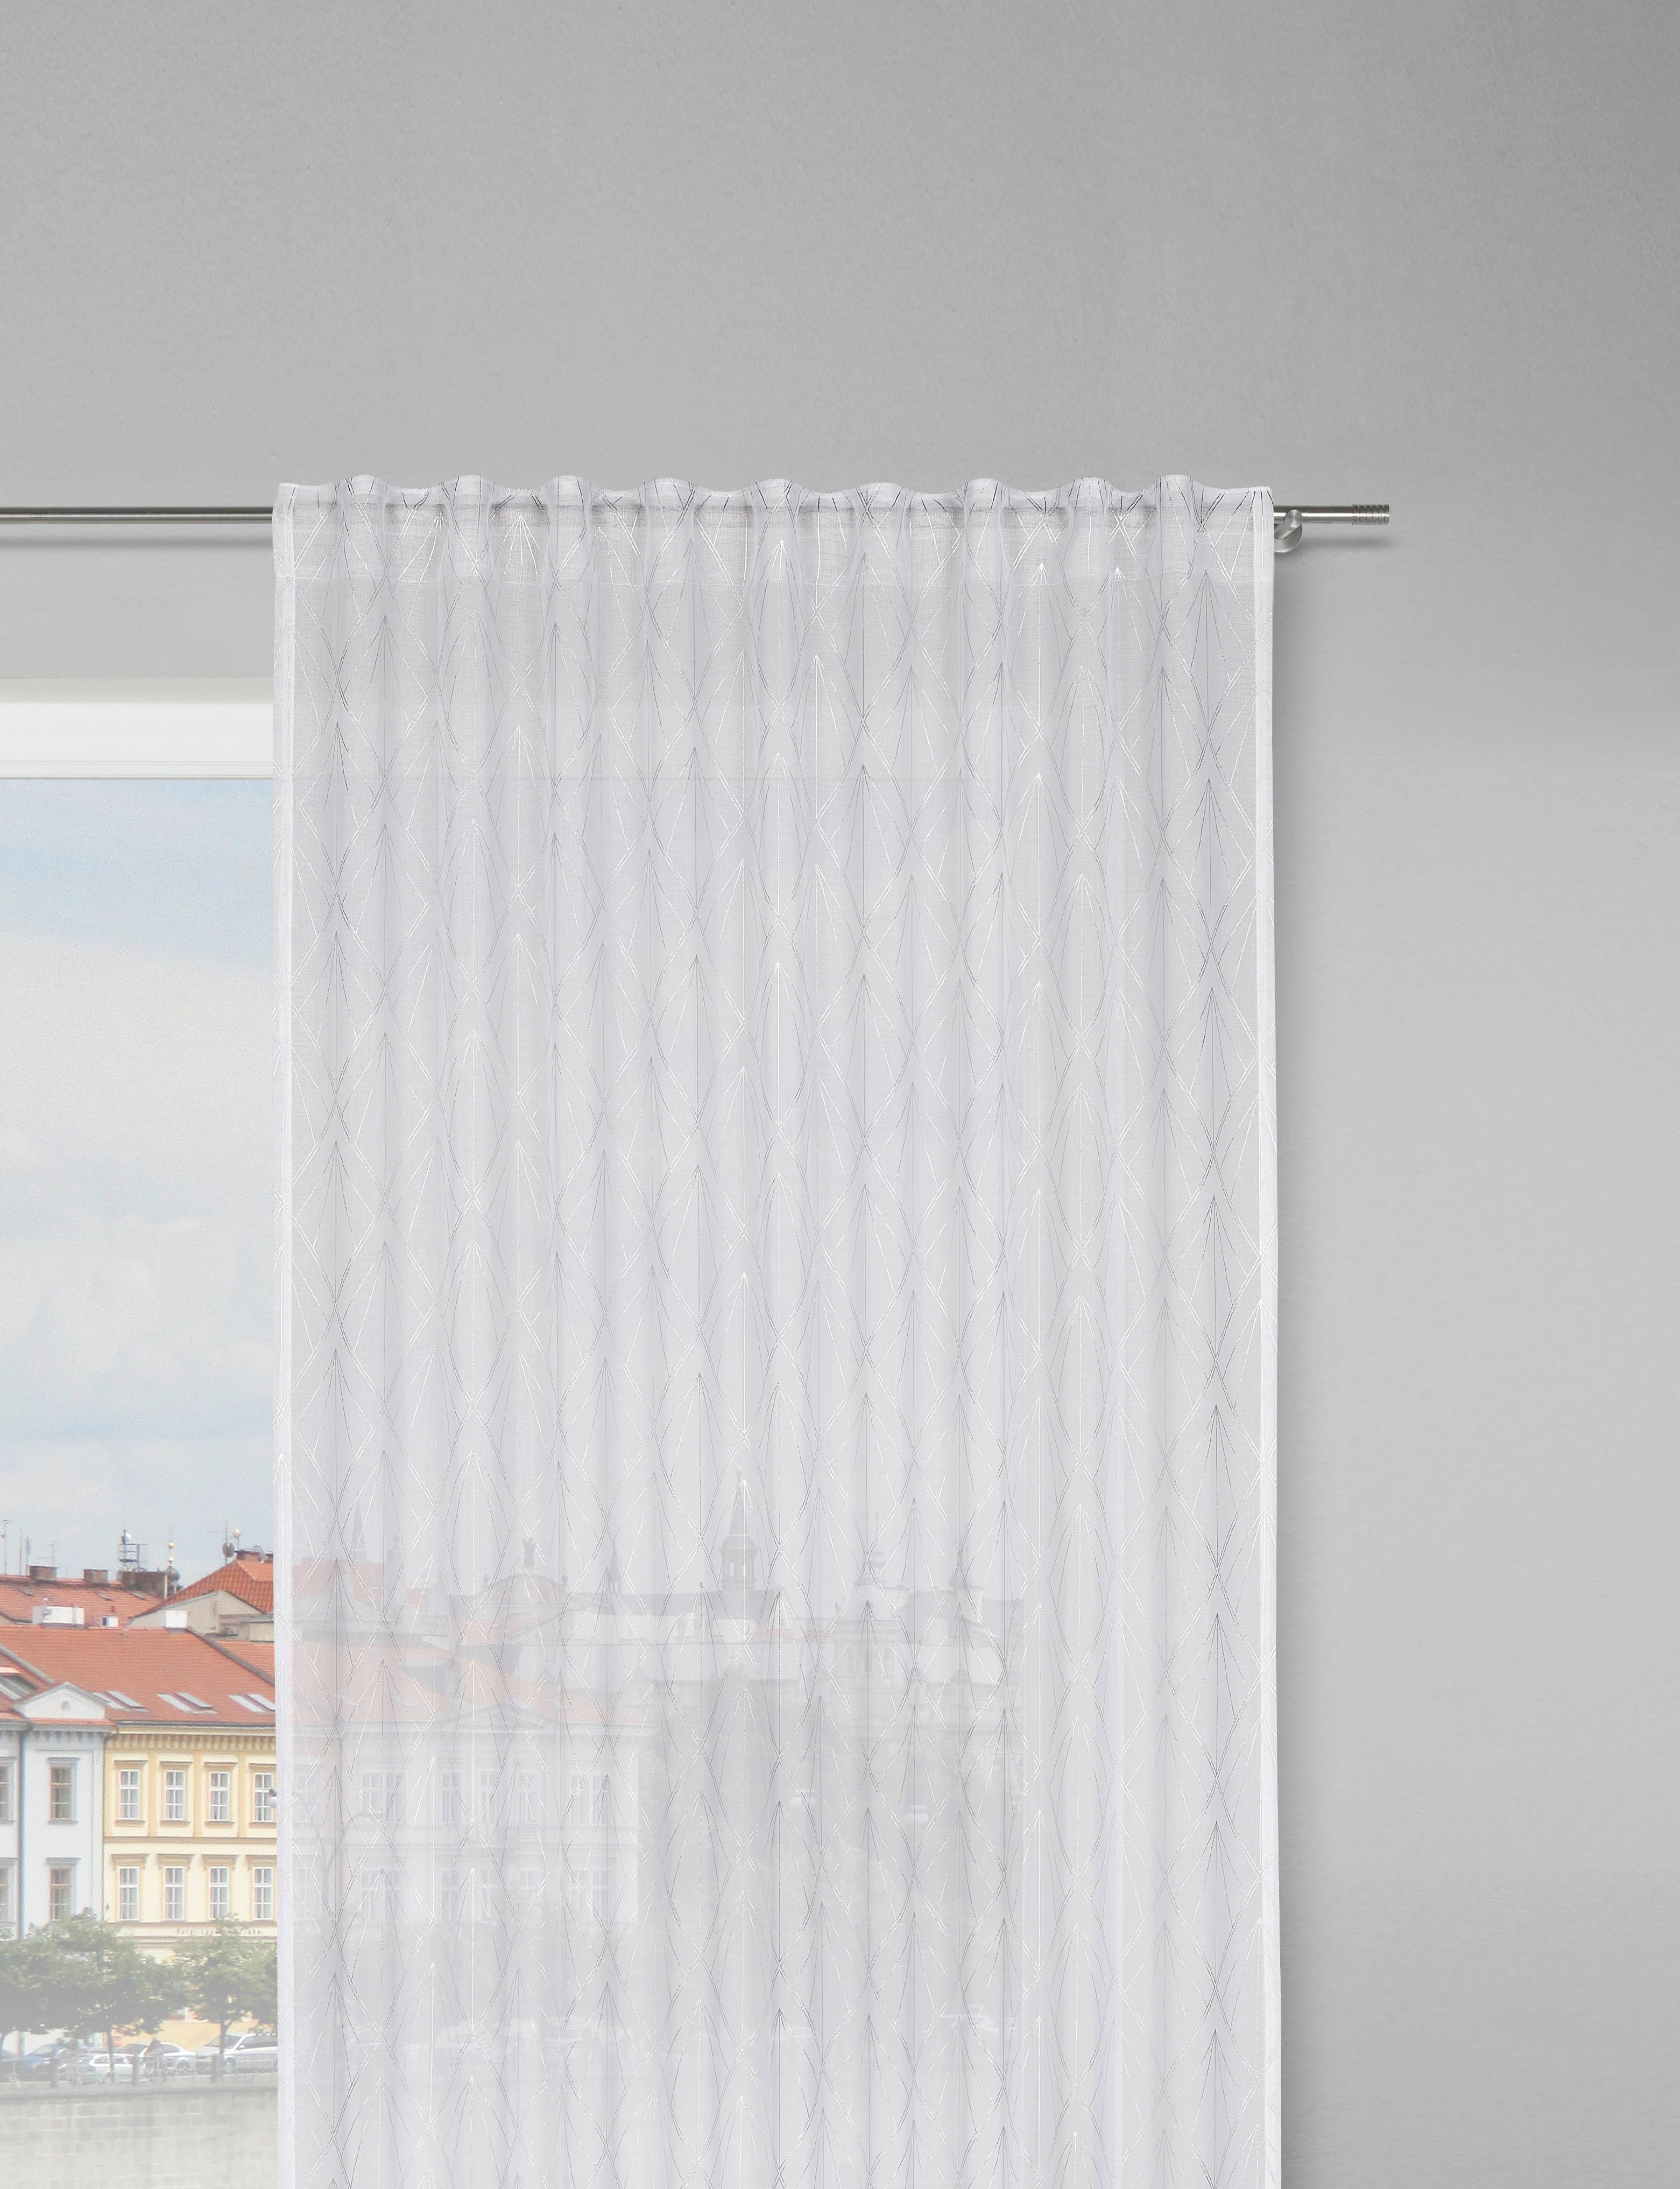 Fertigvorhang Esther in Weiß/Silberfarben - Silberfarben/Weiß, ROMANTIK / LANDHAUS, Textil (135/245cm) - Modern Living